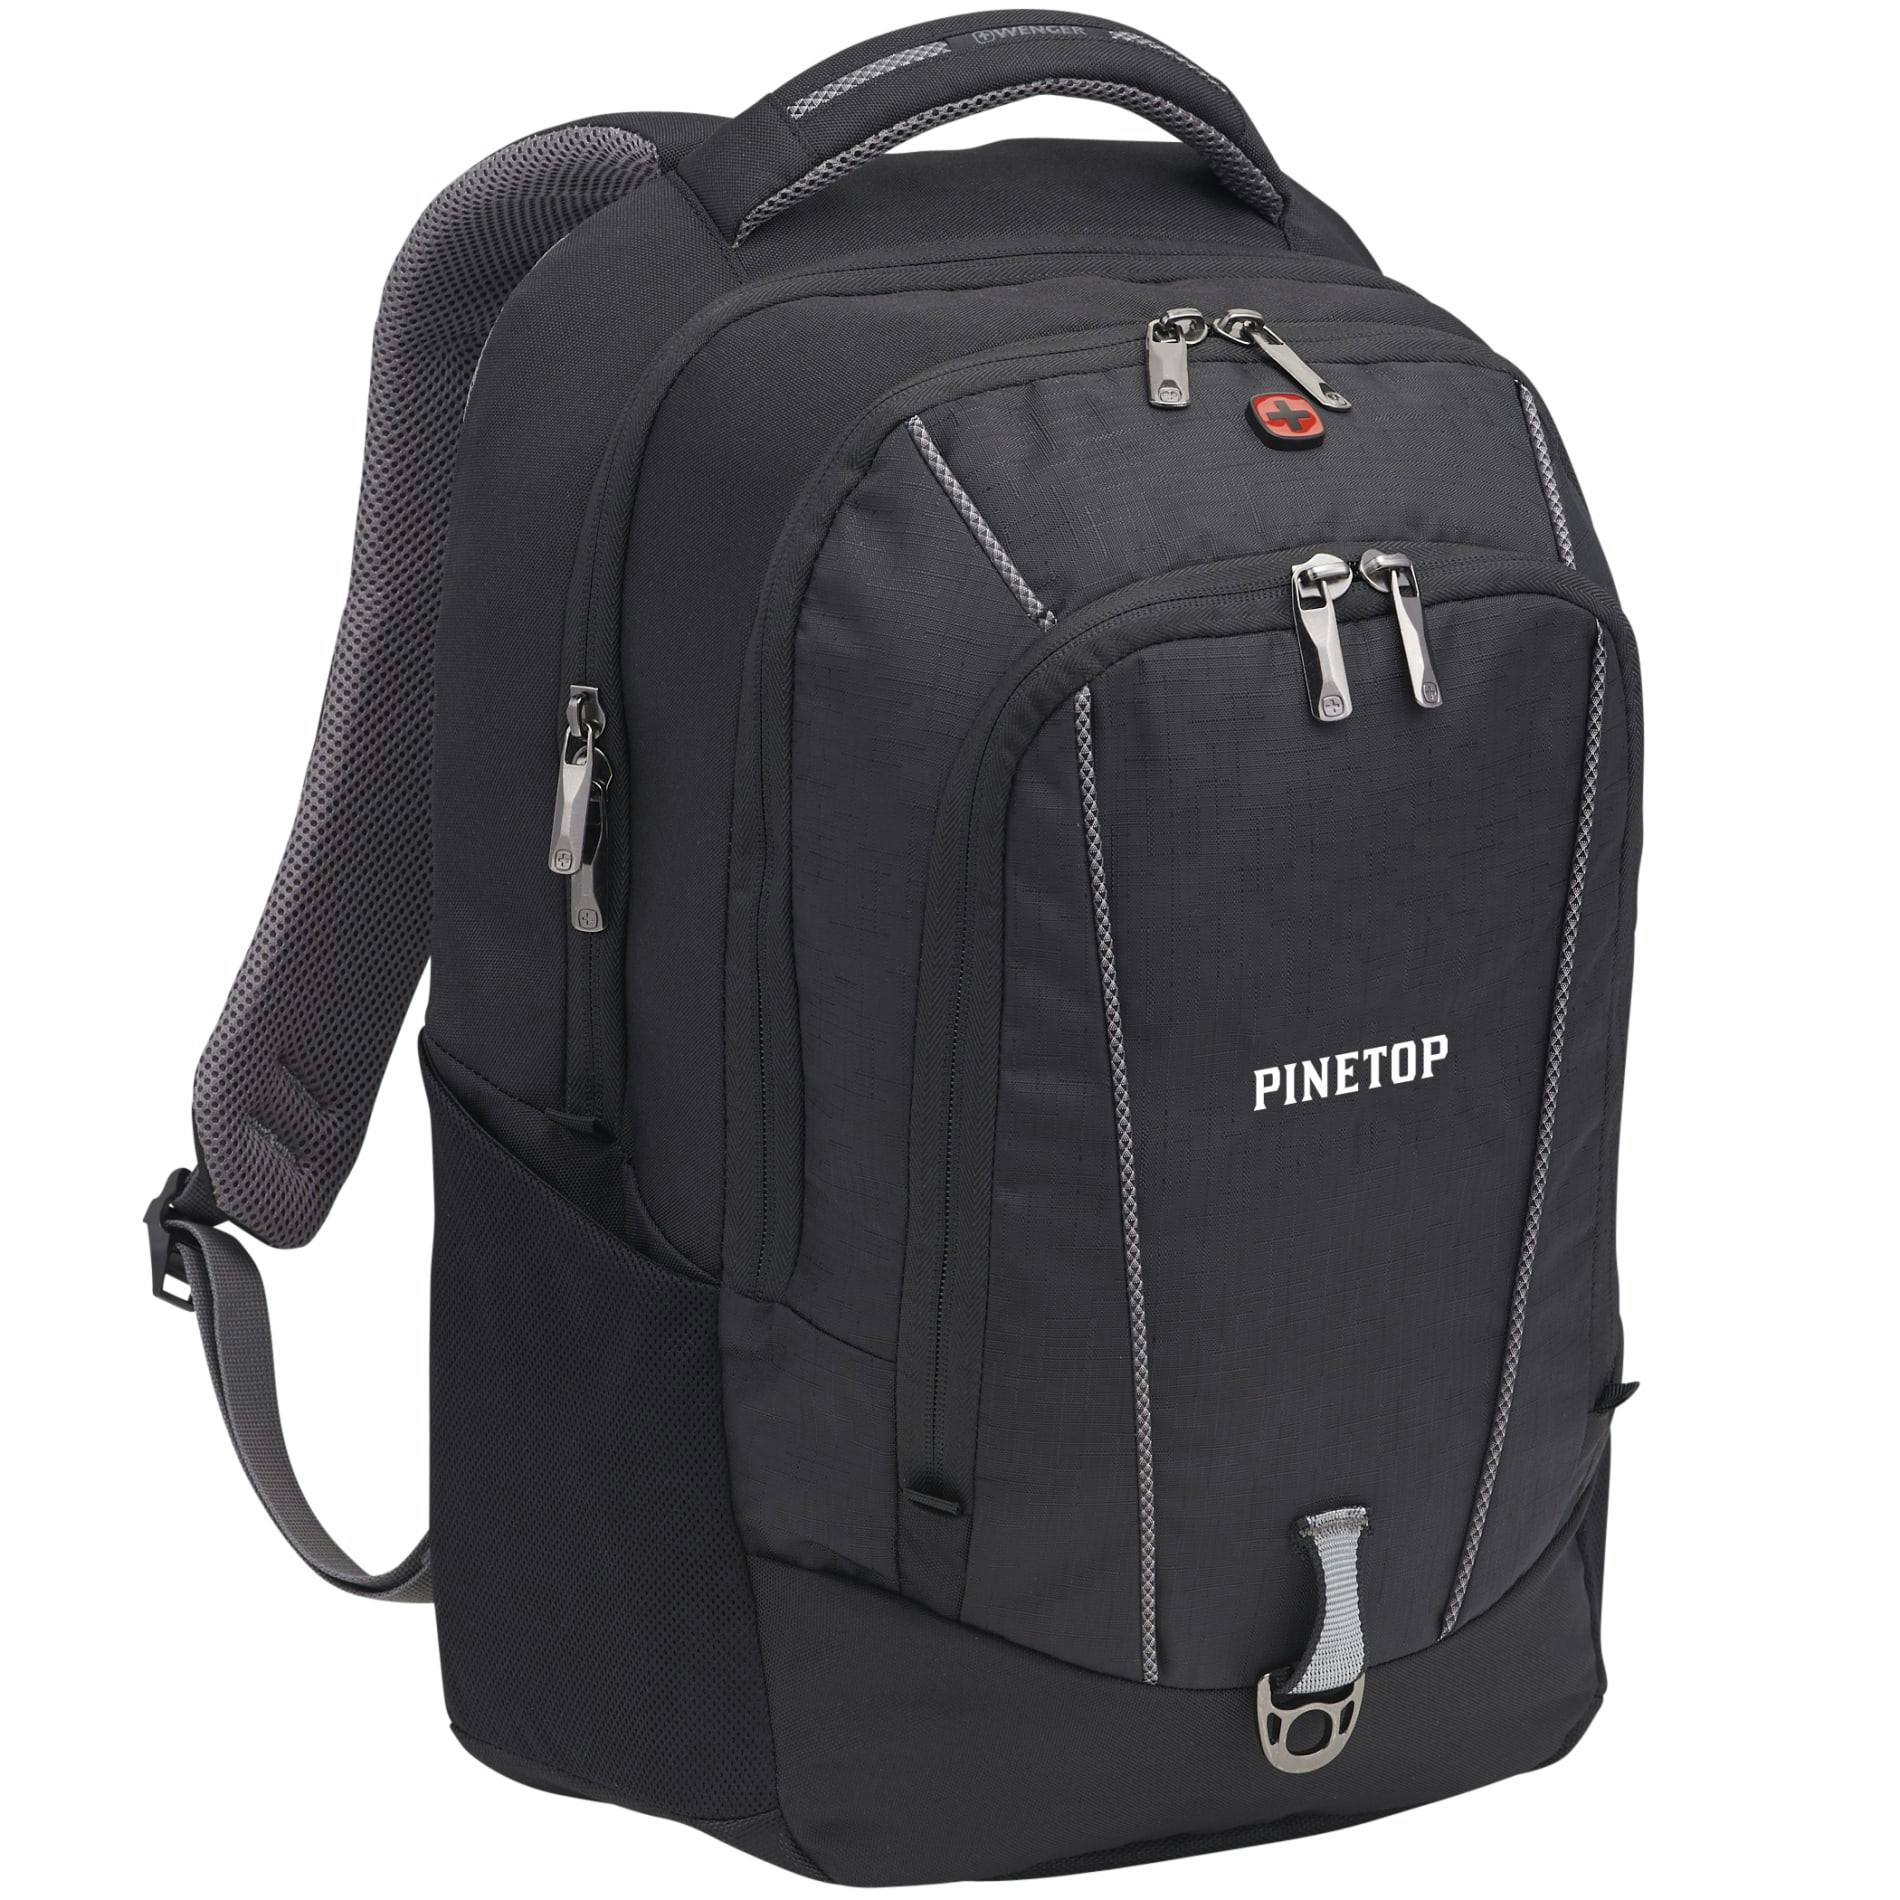 Wenger Pro II 17" Computer Backpack - additional Image 9